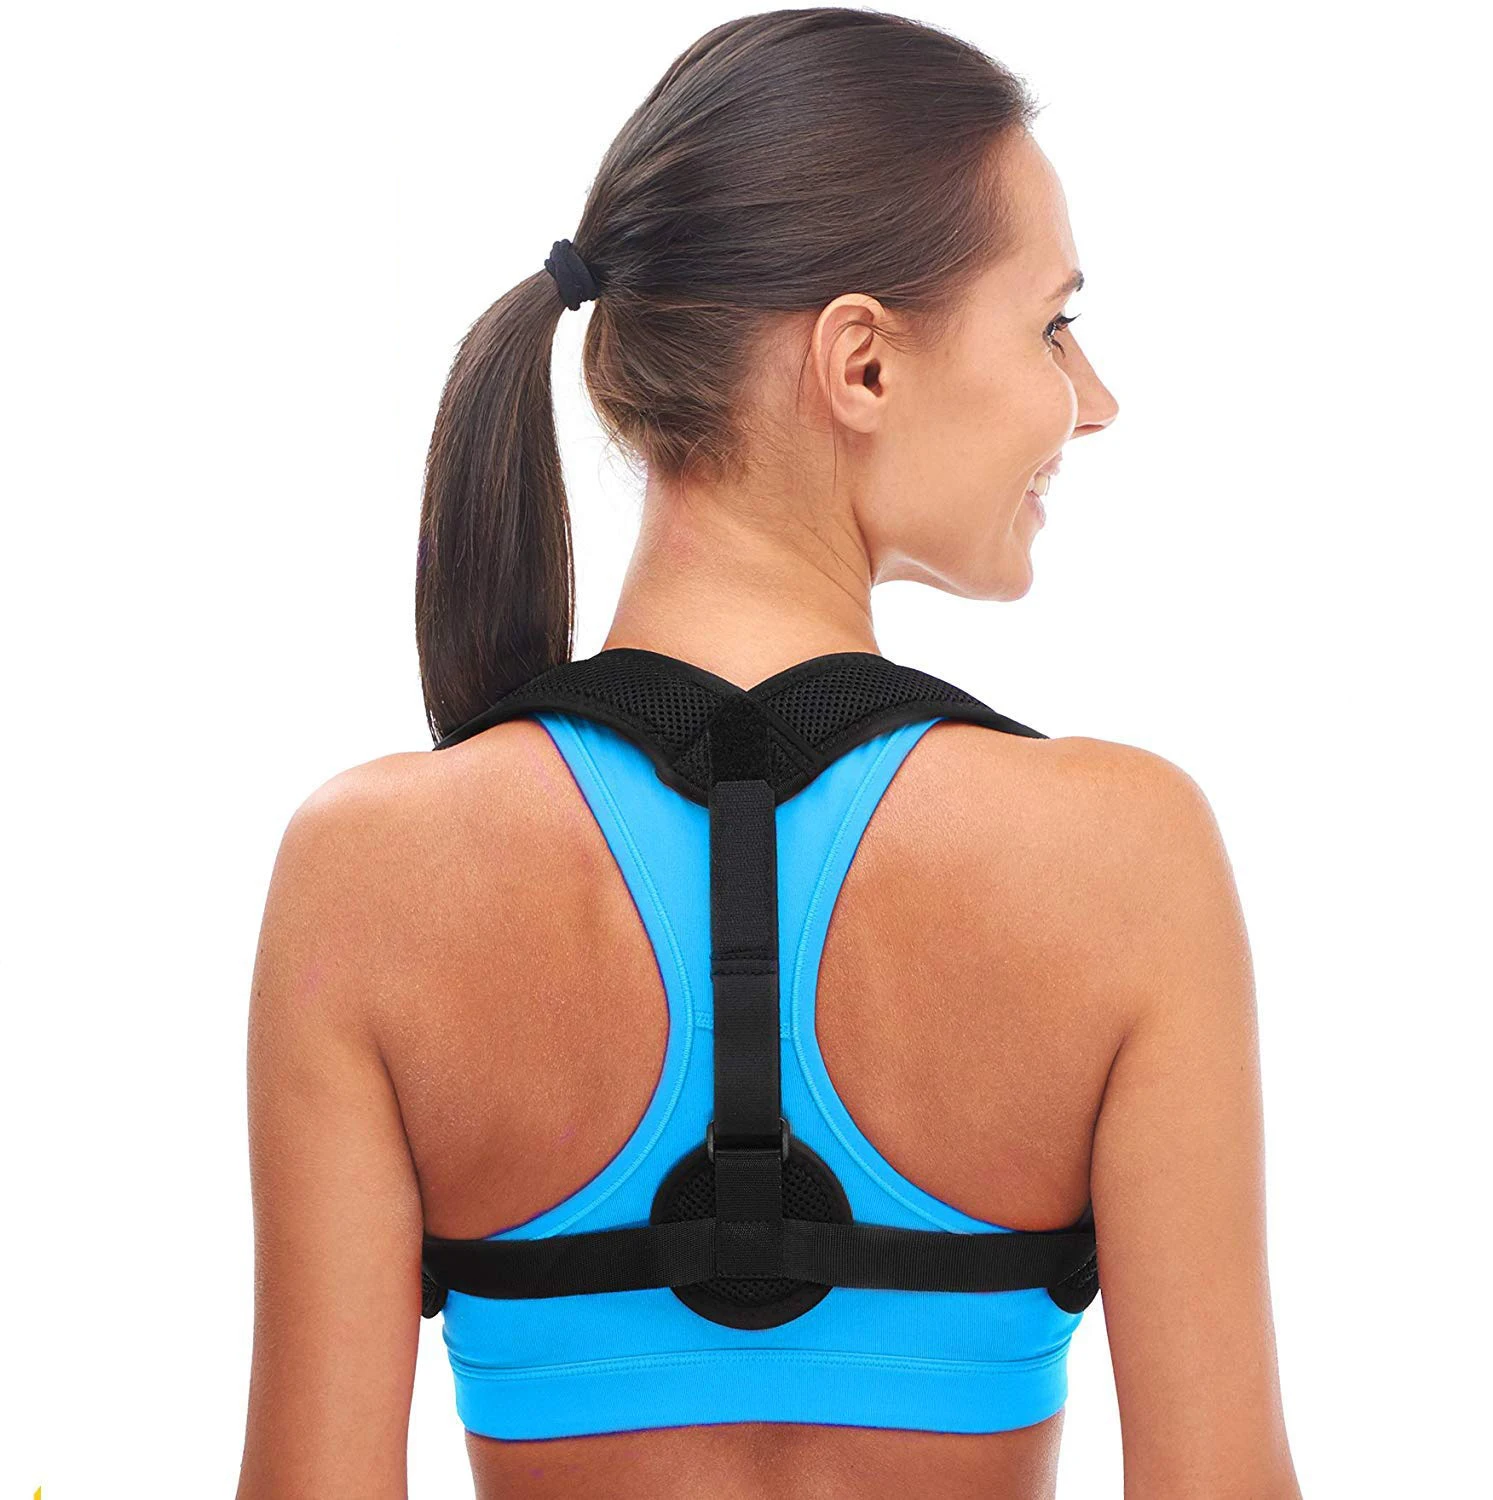 

Wholesale Upper Back Support Correction Band Clavicle Support Back Straightener Shoulder Brace Posture Corrector For Men Women, Black